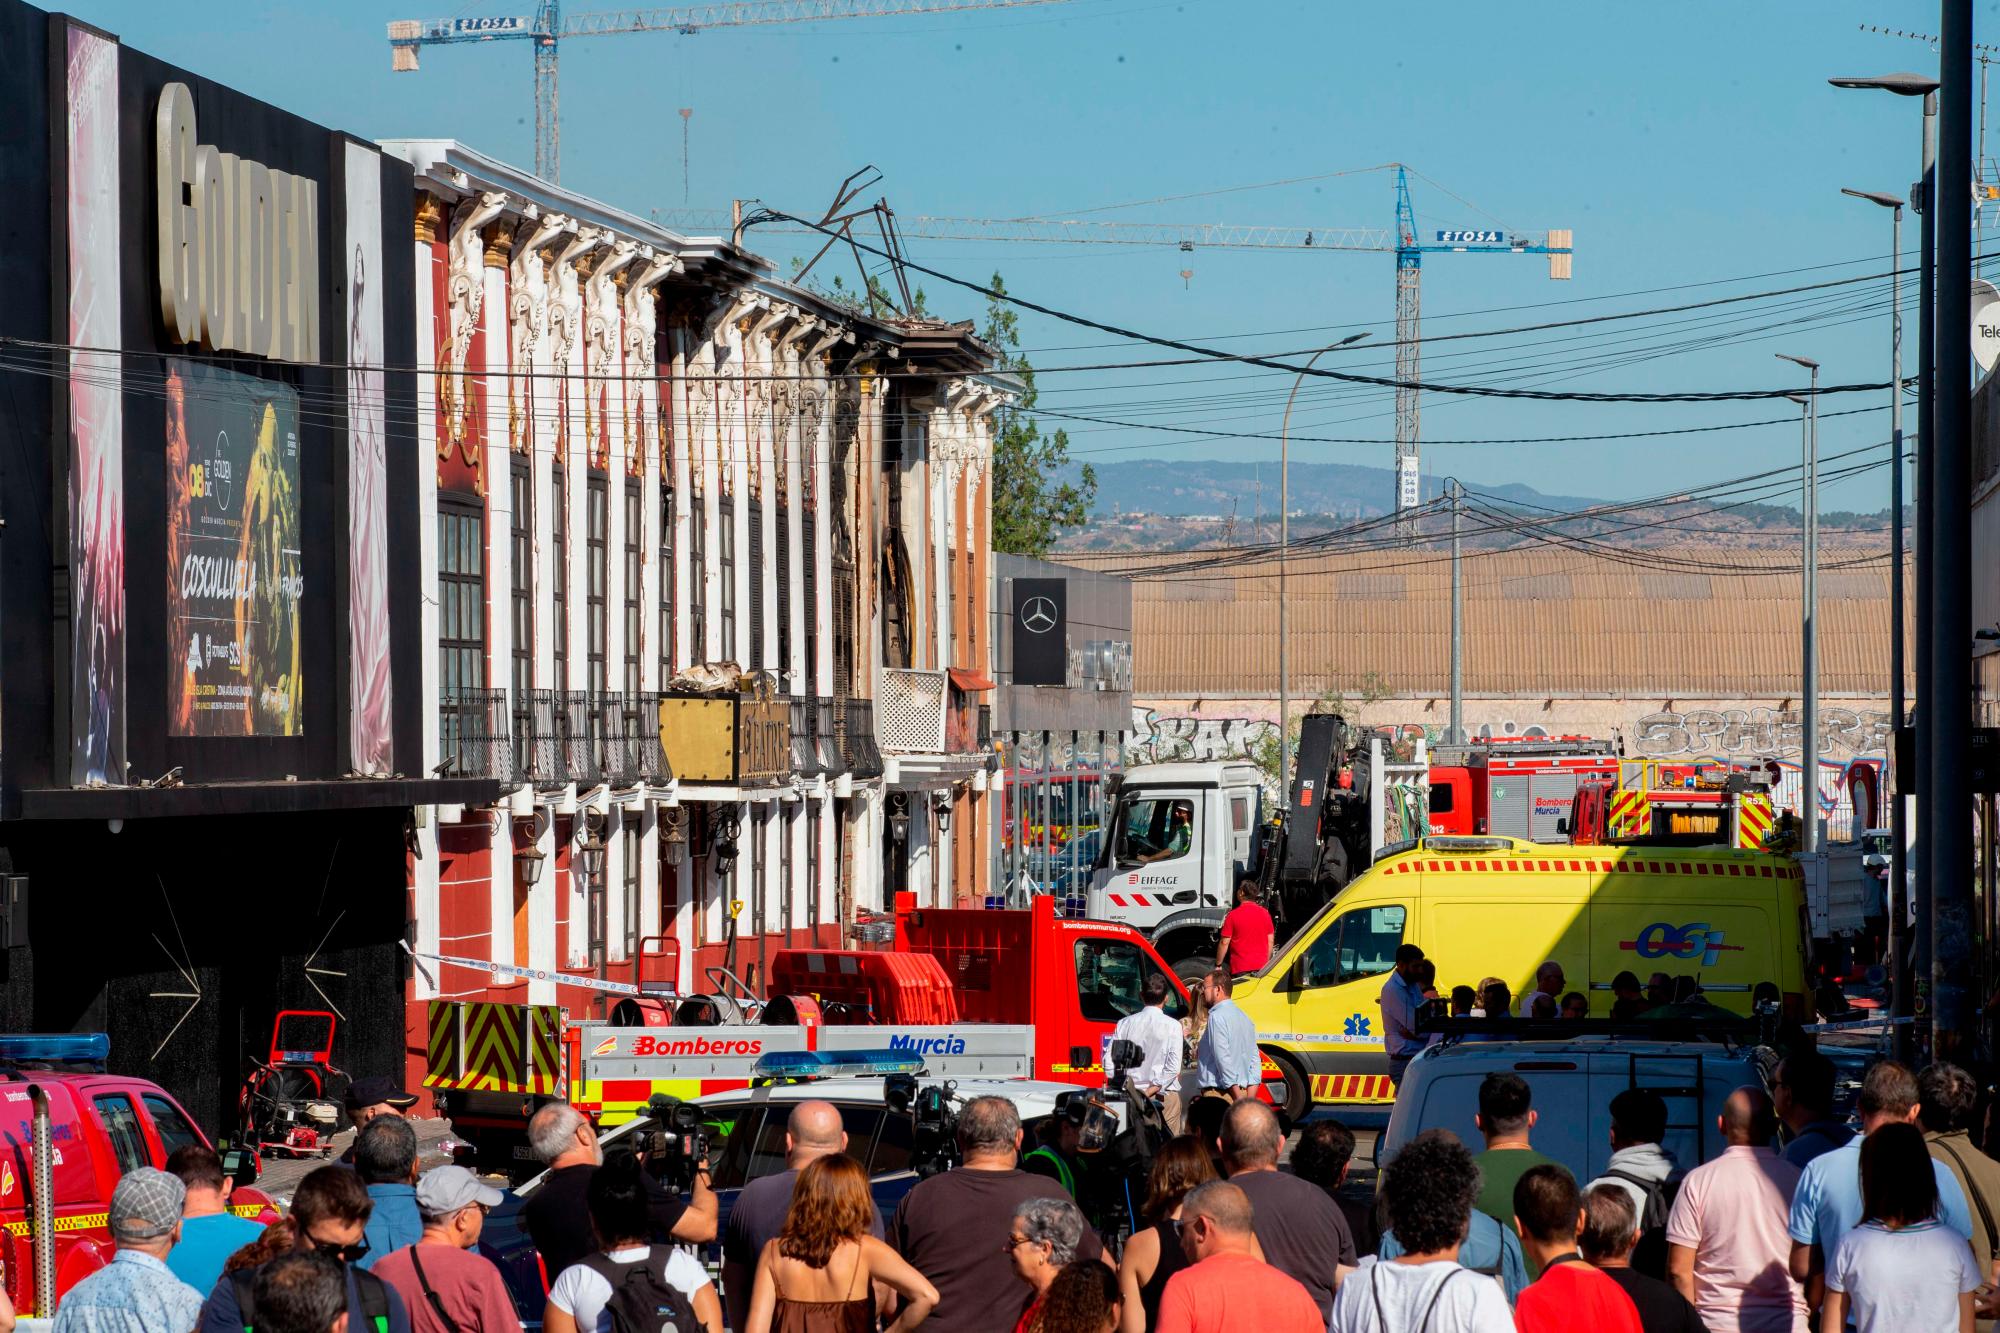 Dueño de discoteca incendiada en España dice que no fue notificado de la orden de cierre